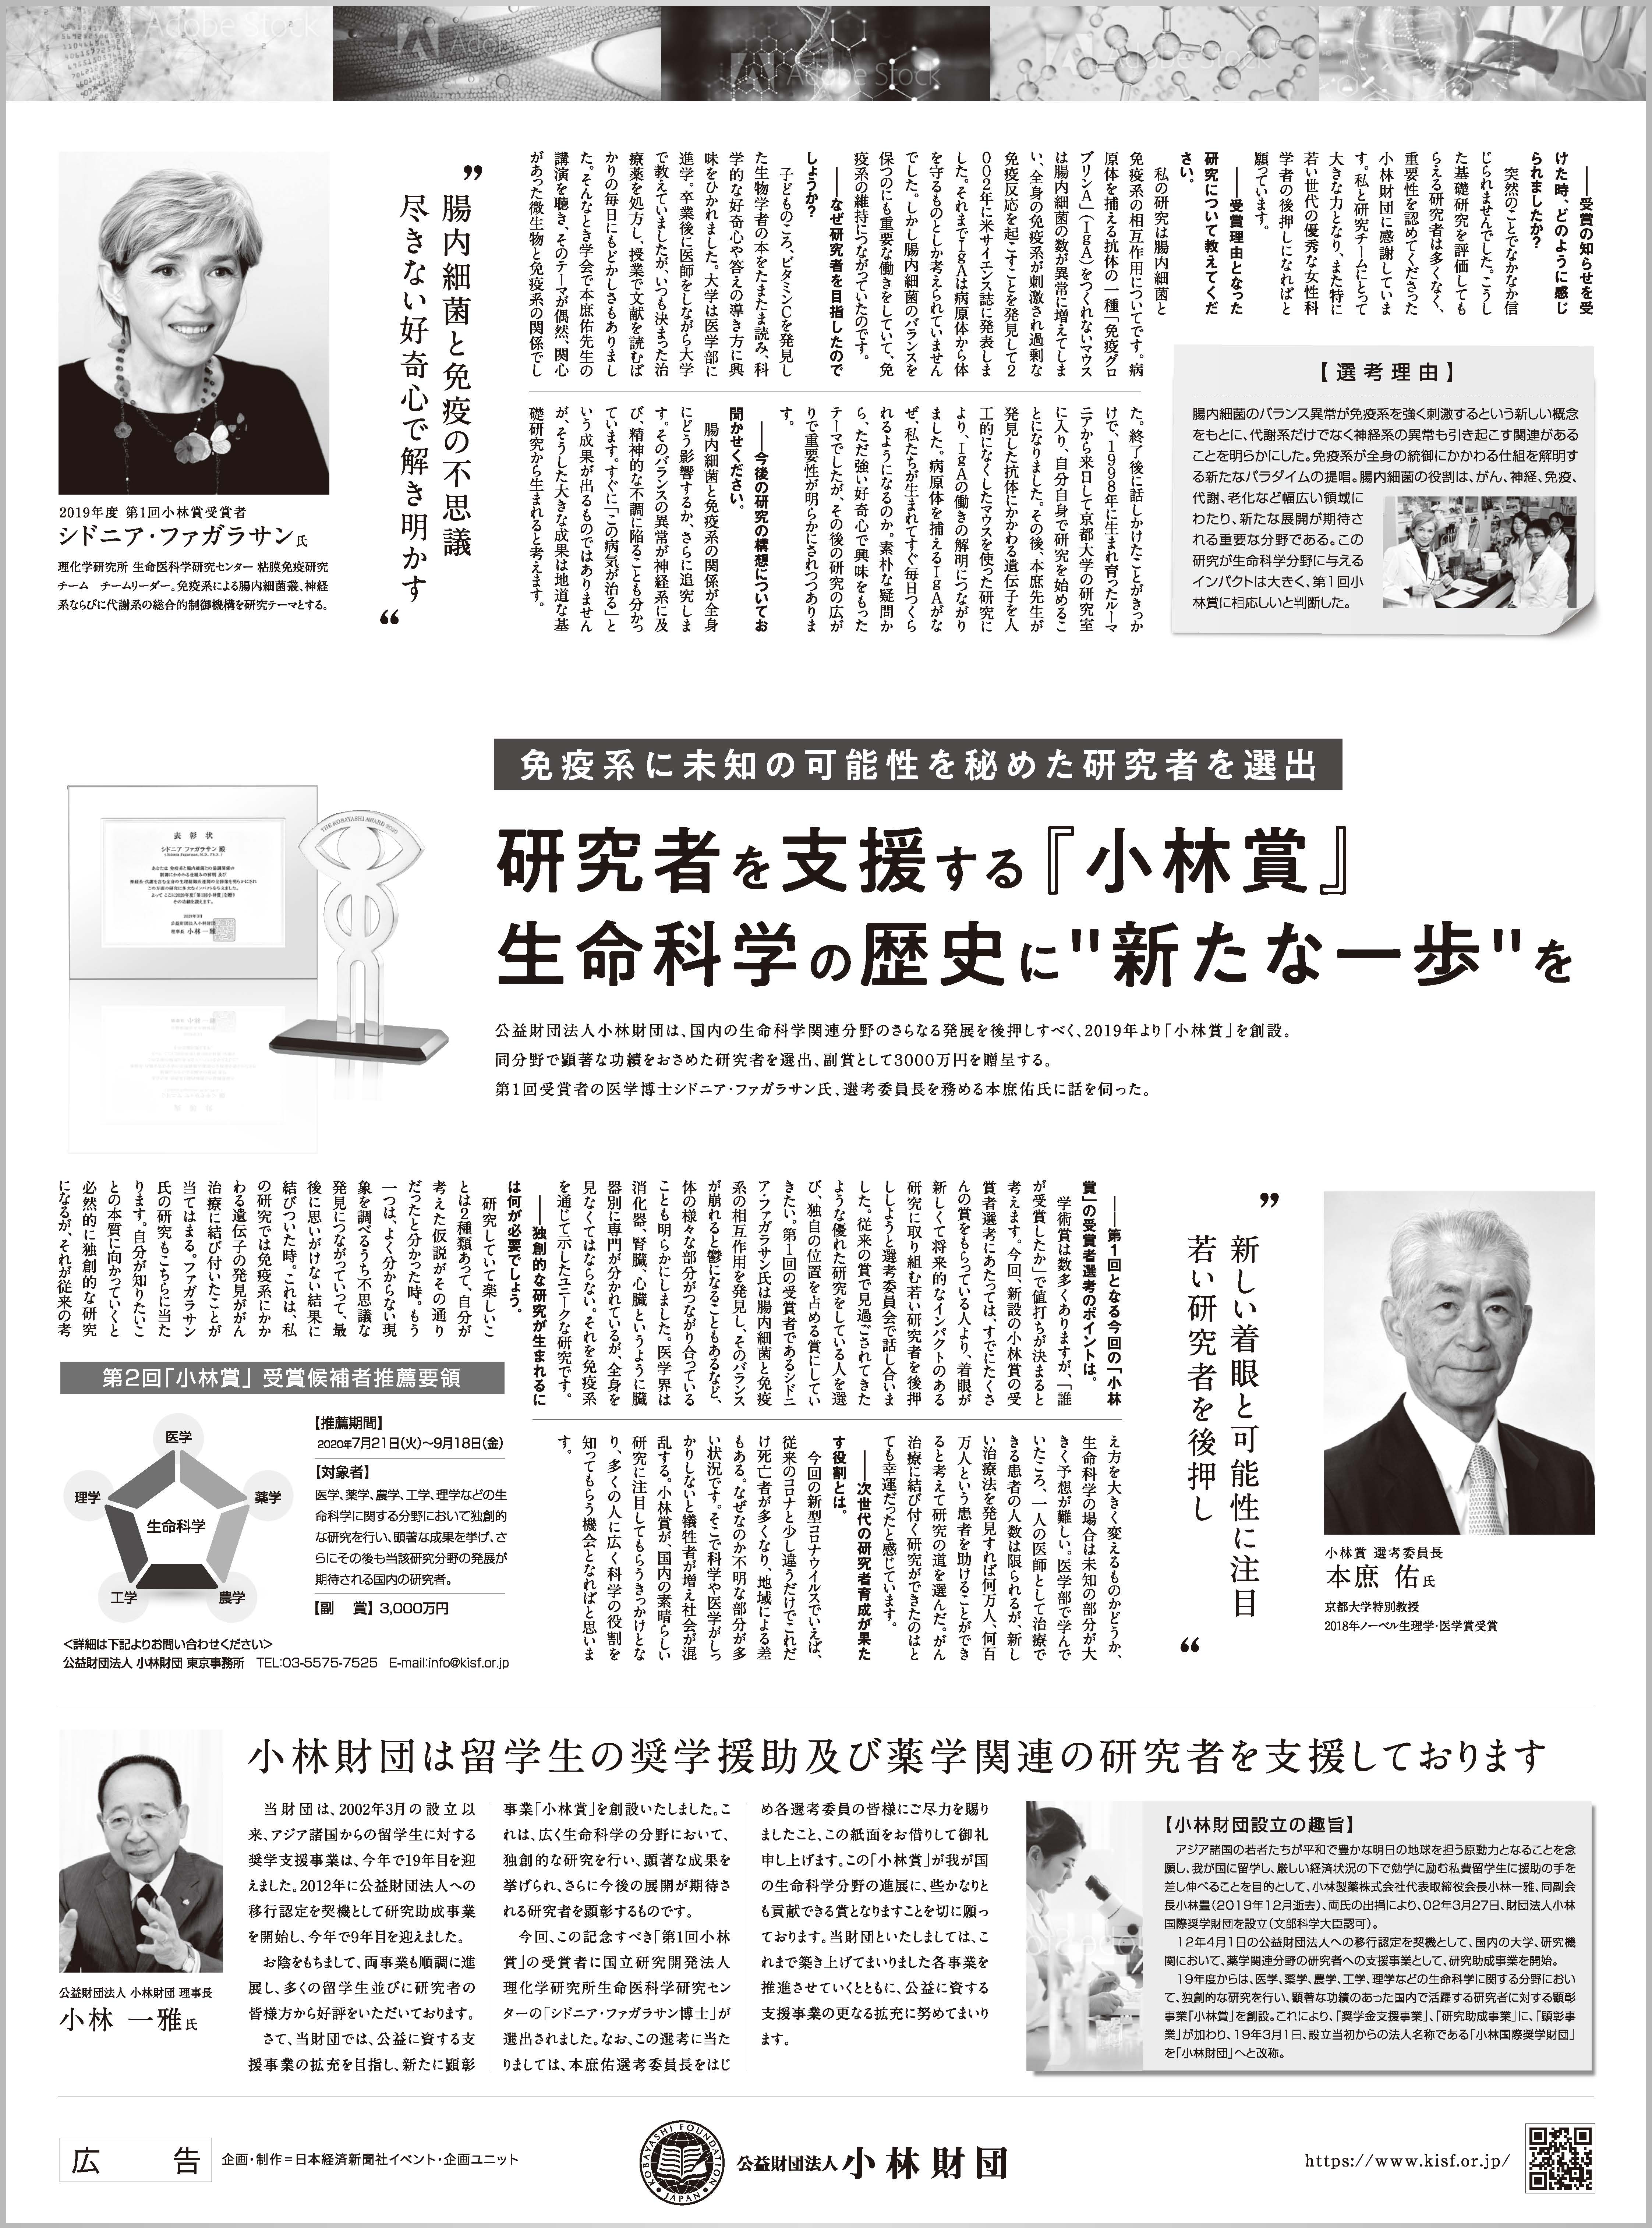 出典：日本経済新聞 朝刊 2020年7月15日掲載 小林財団広告（PDF)